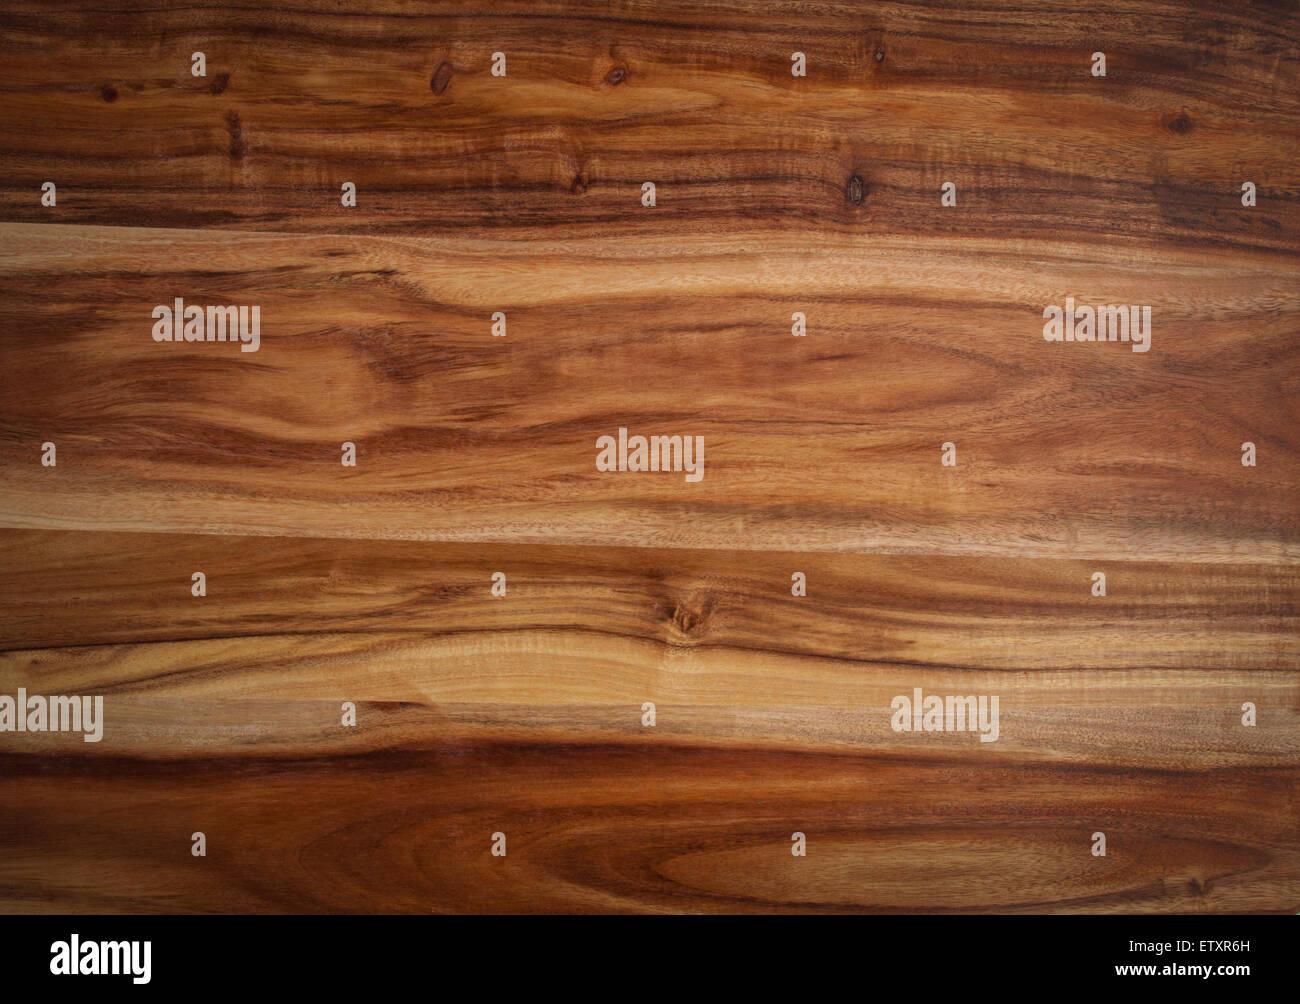 Closeup of Acacia wood texture Stock Photo - Alamy